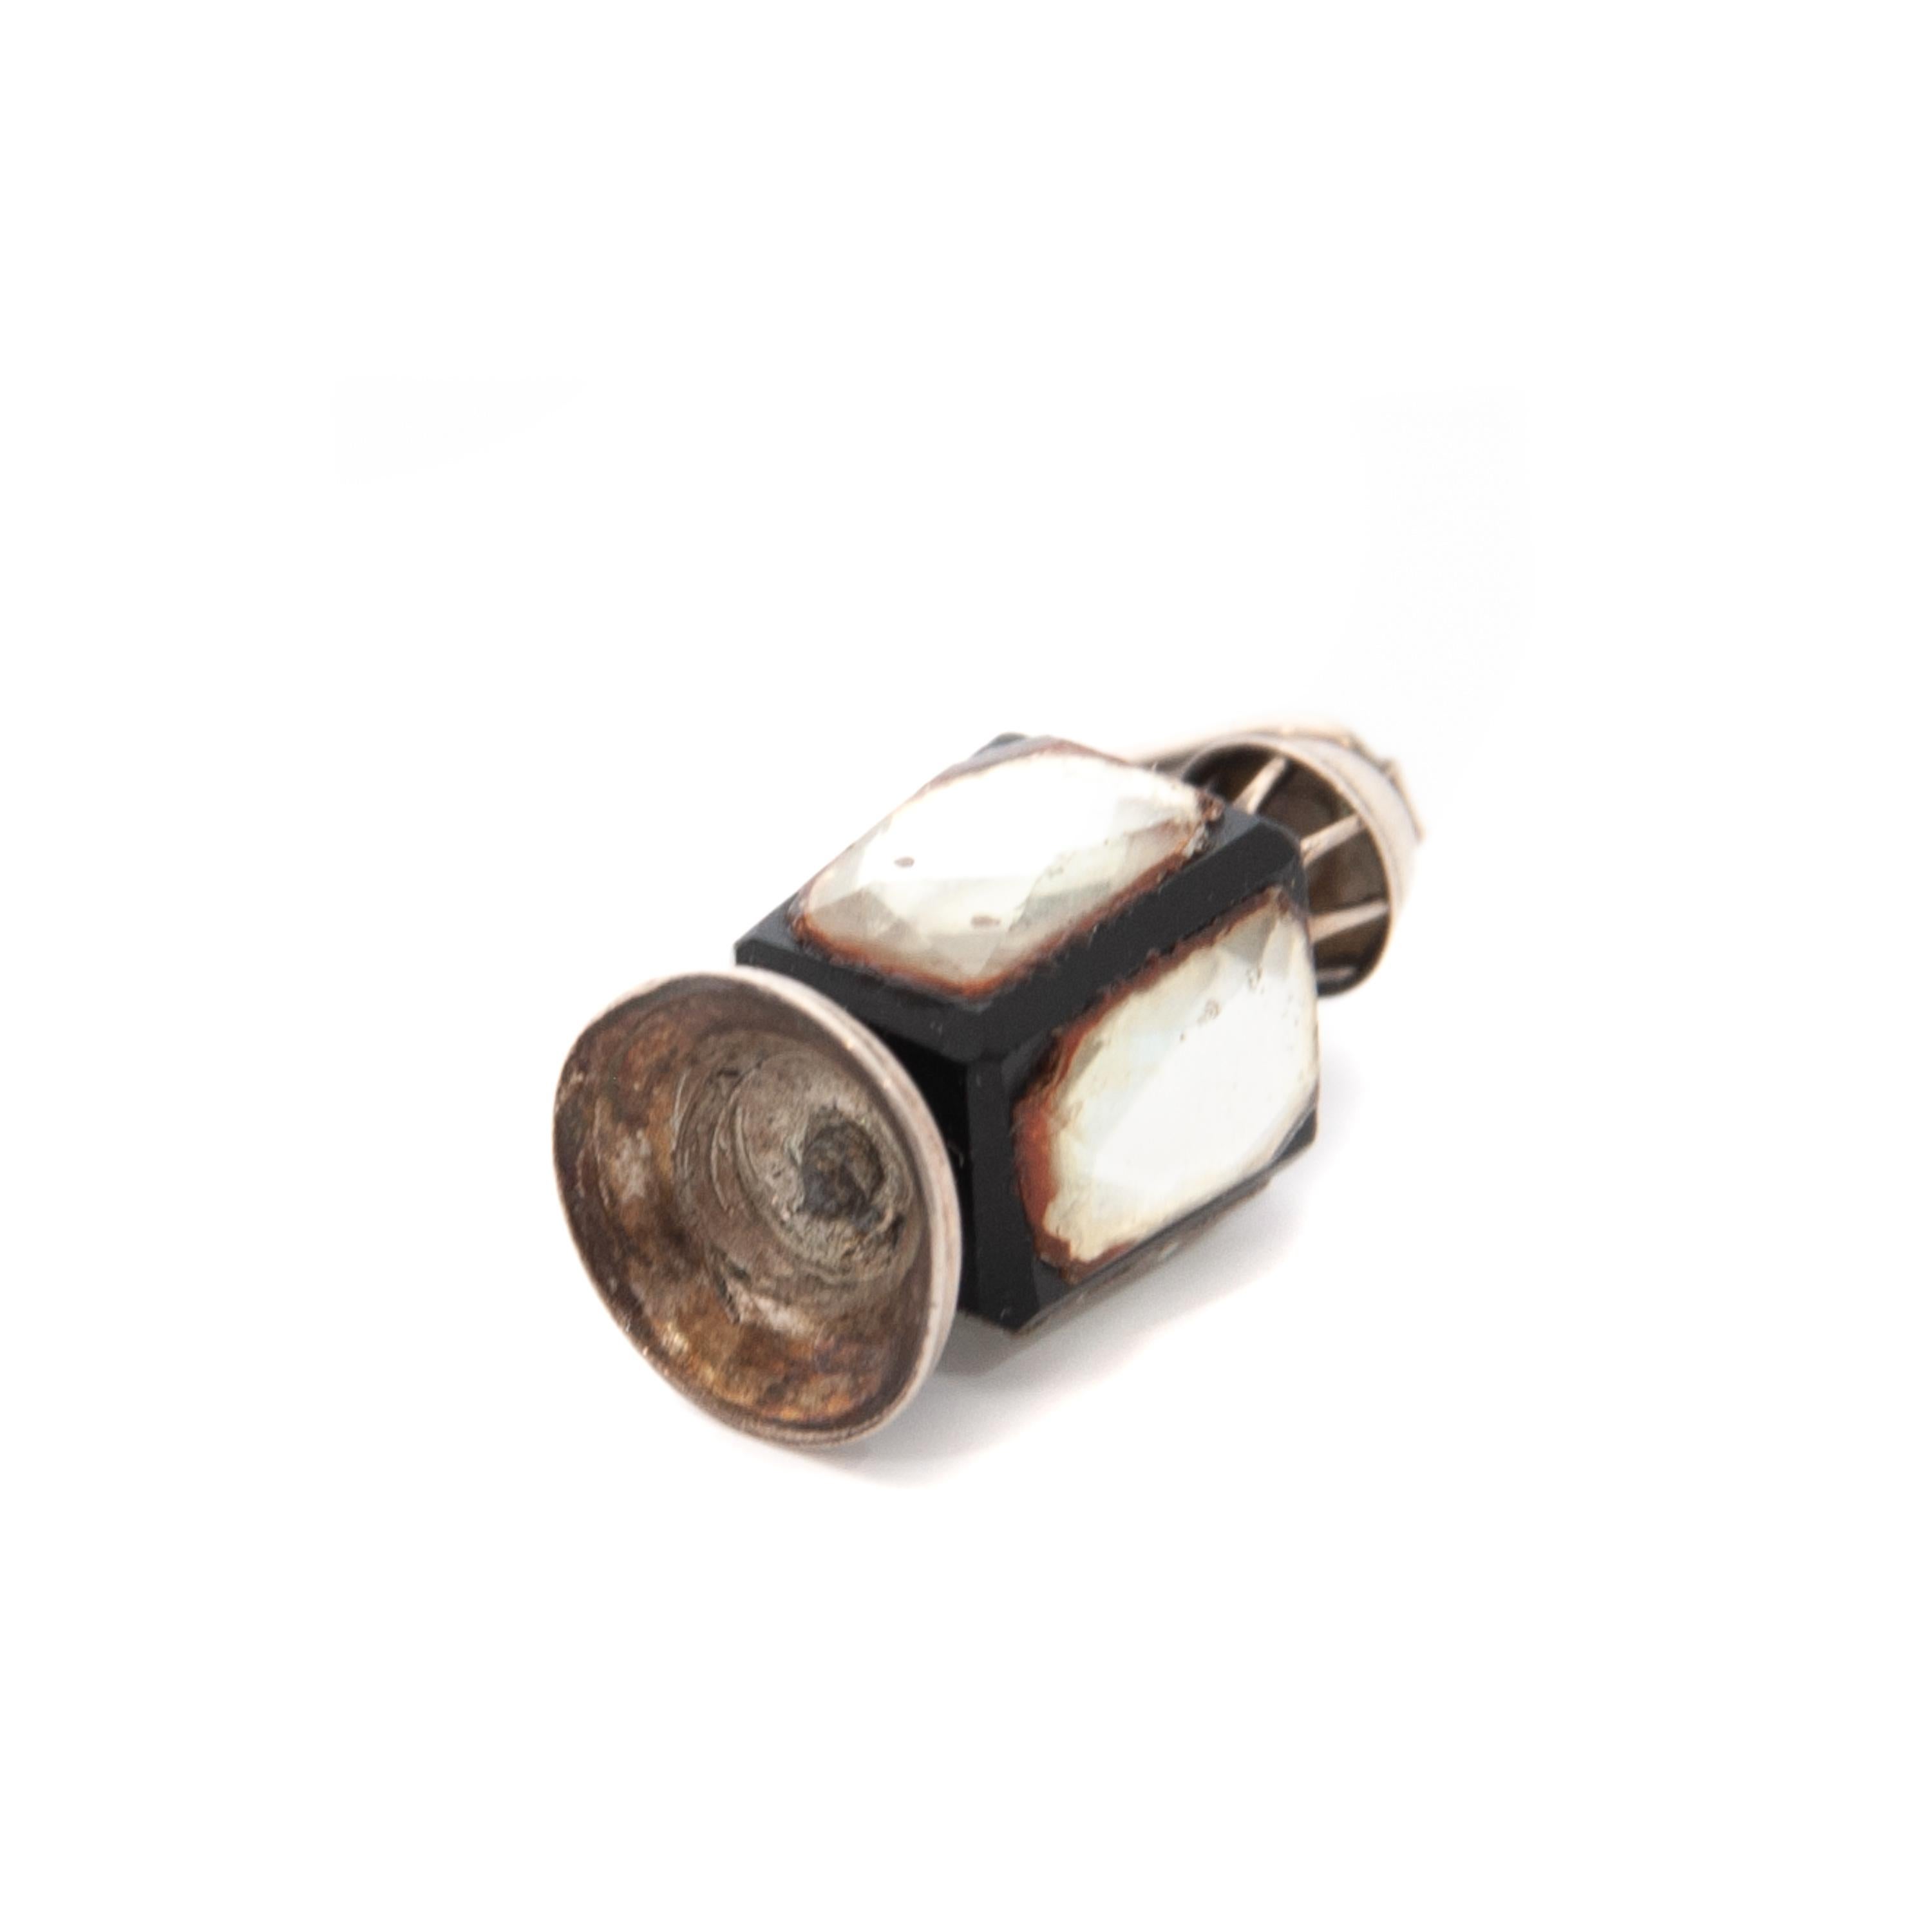 Vintage Lantern Charm Silver Charm Pendant 1